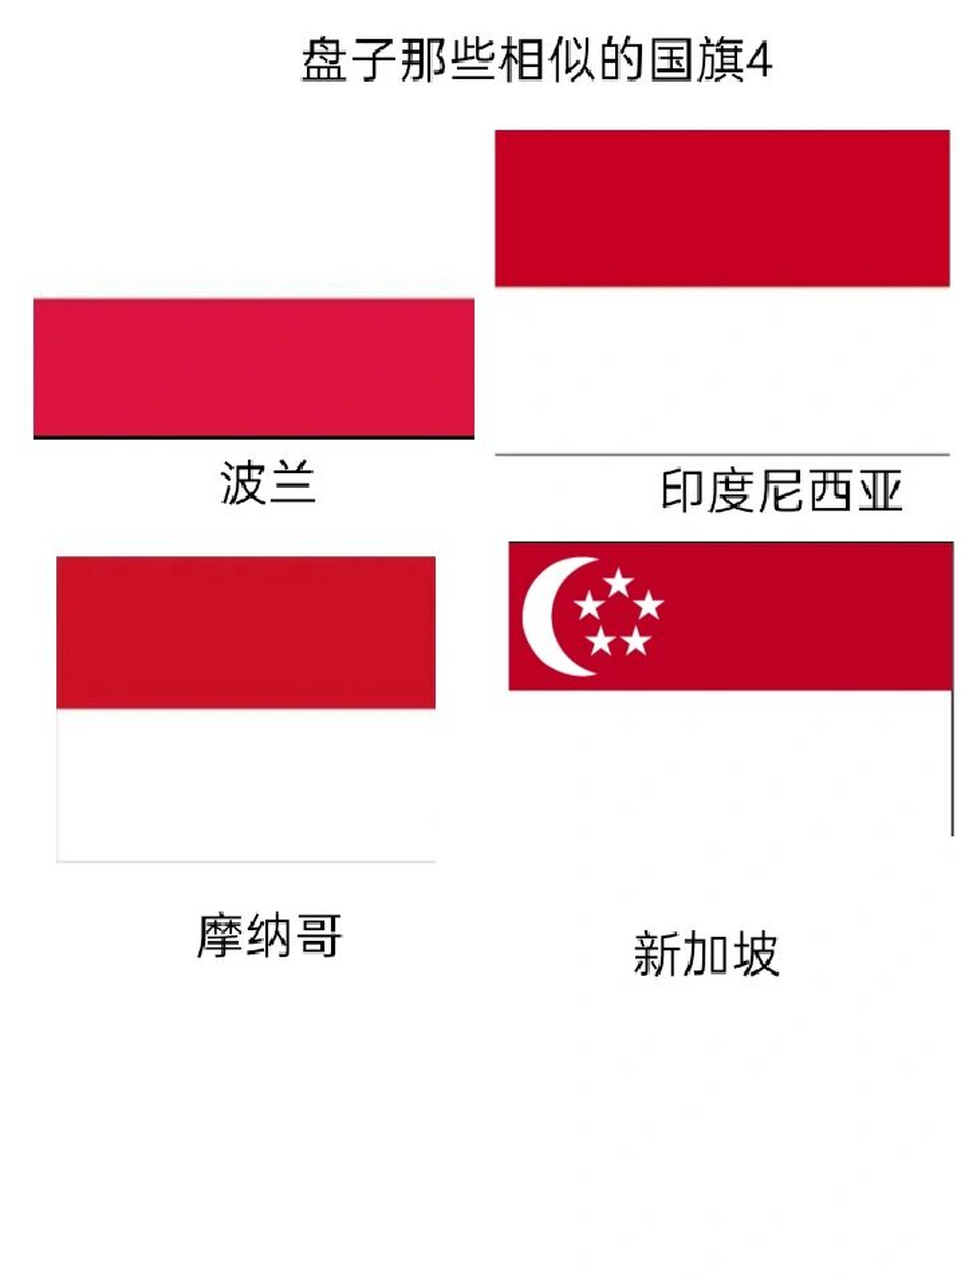 最像中国的国旗图片